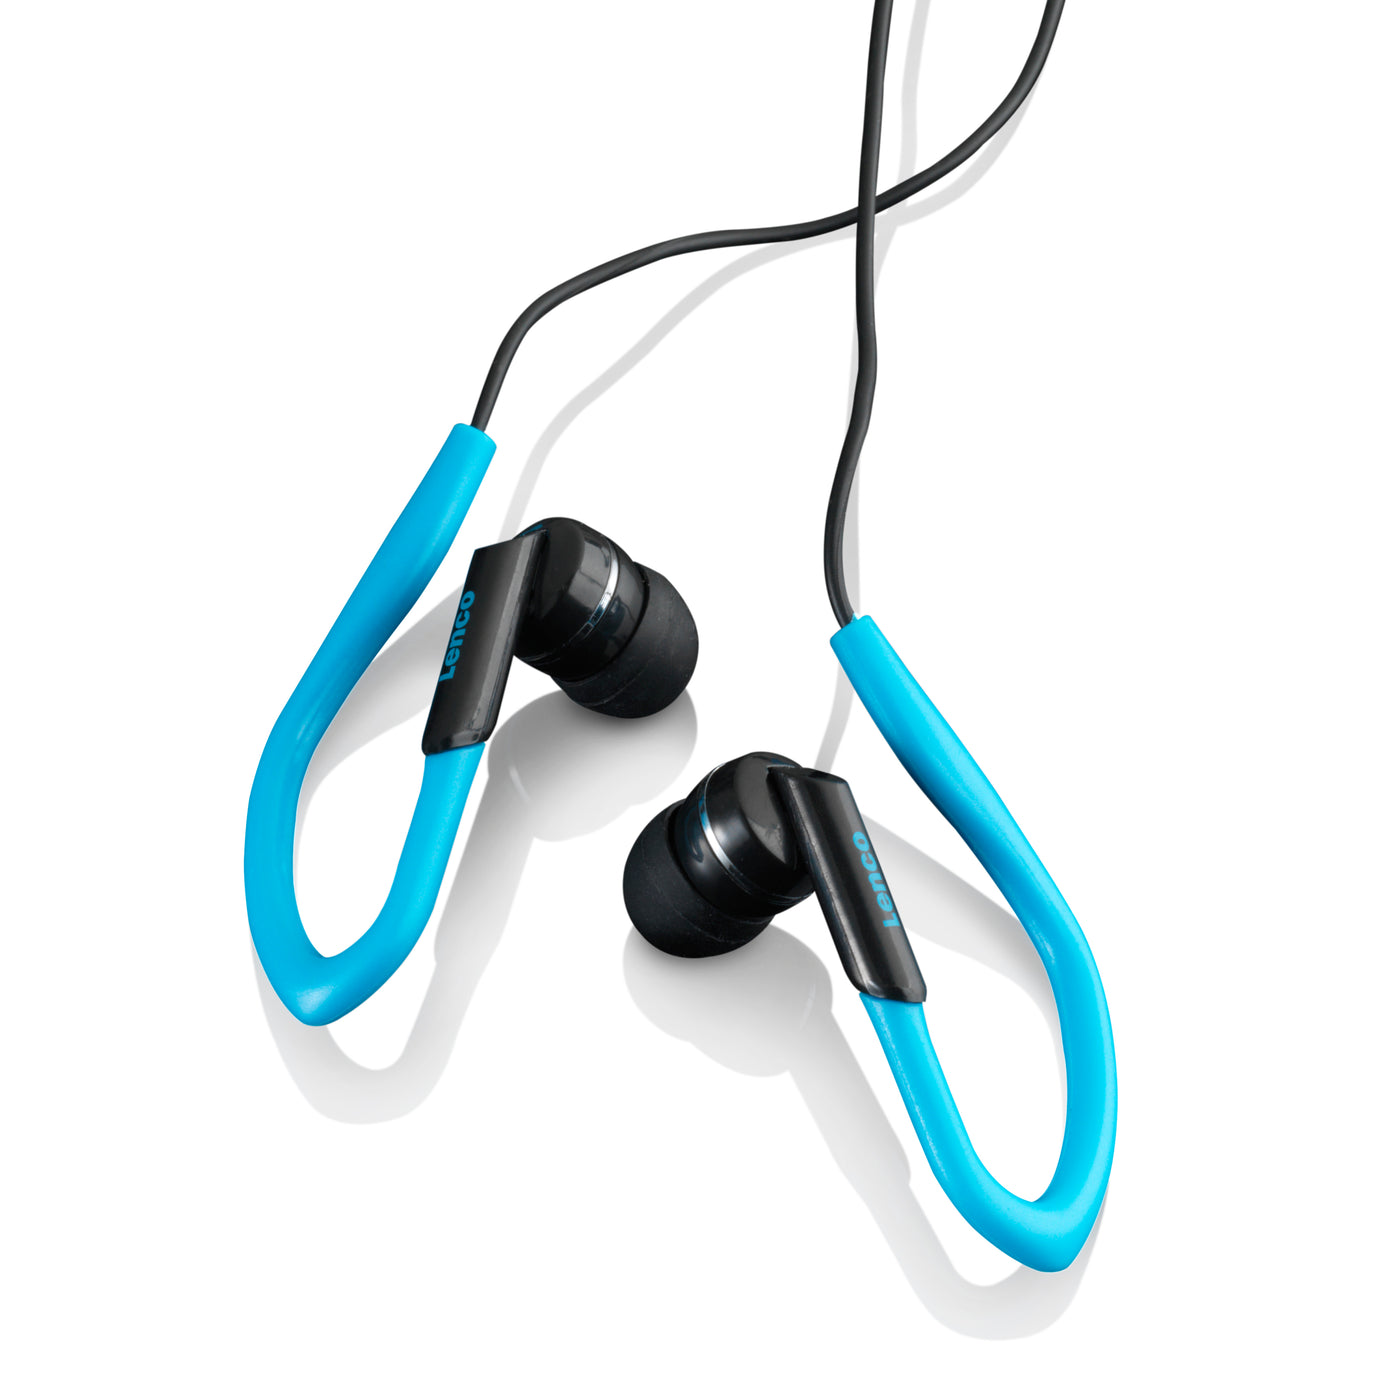 LENCO PODO-152 Niebieski – Odtwarzacz MP3/4 z krokomierzem i 4 GB – Niebieski